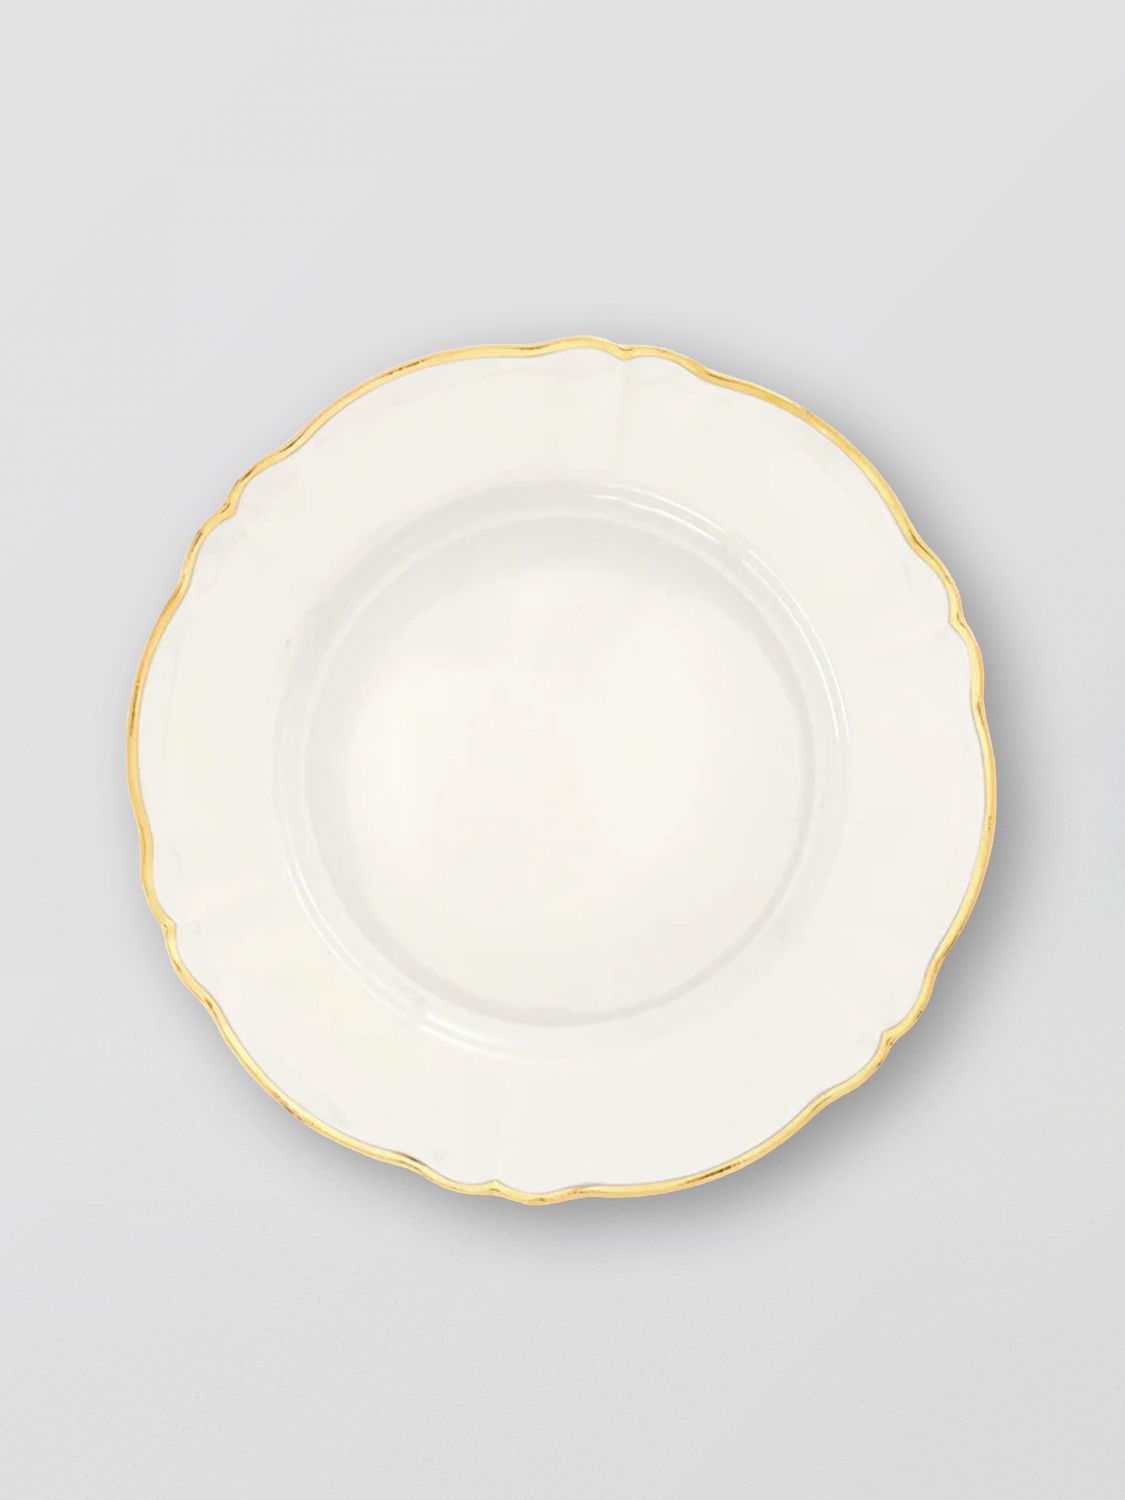  Dishware BITOSSI HOME Lifestyle colour White